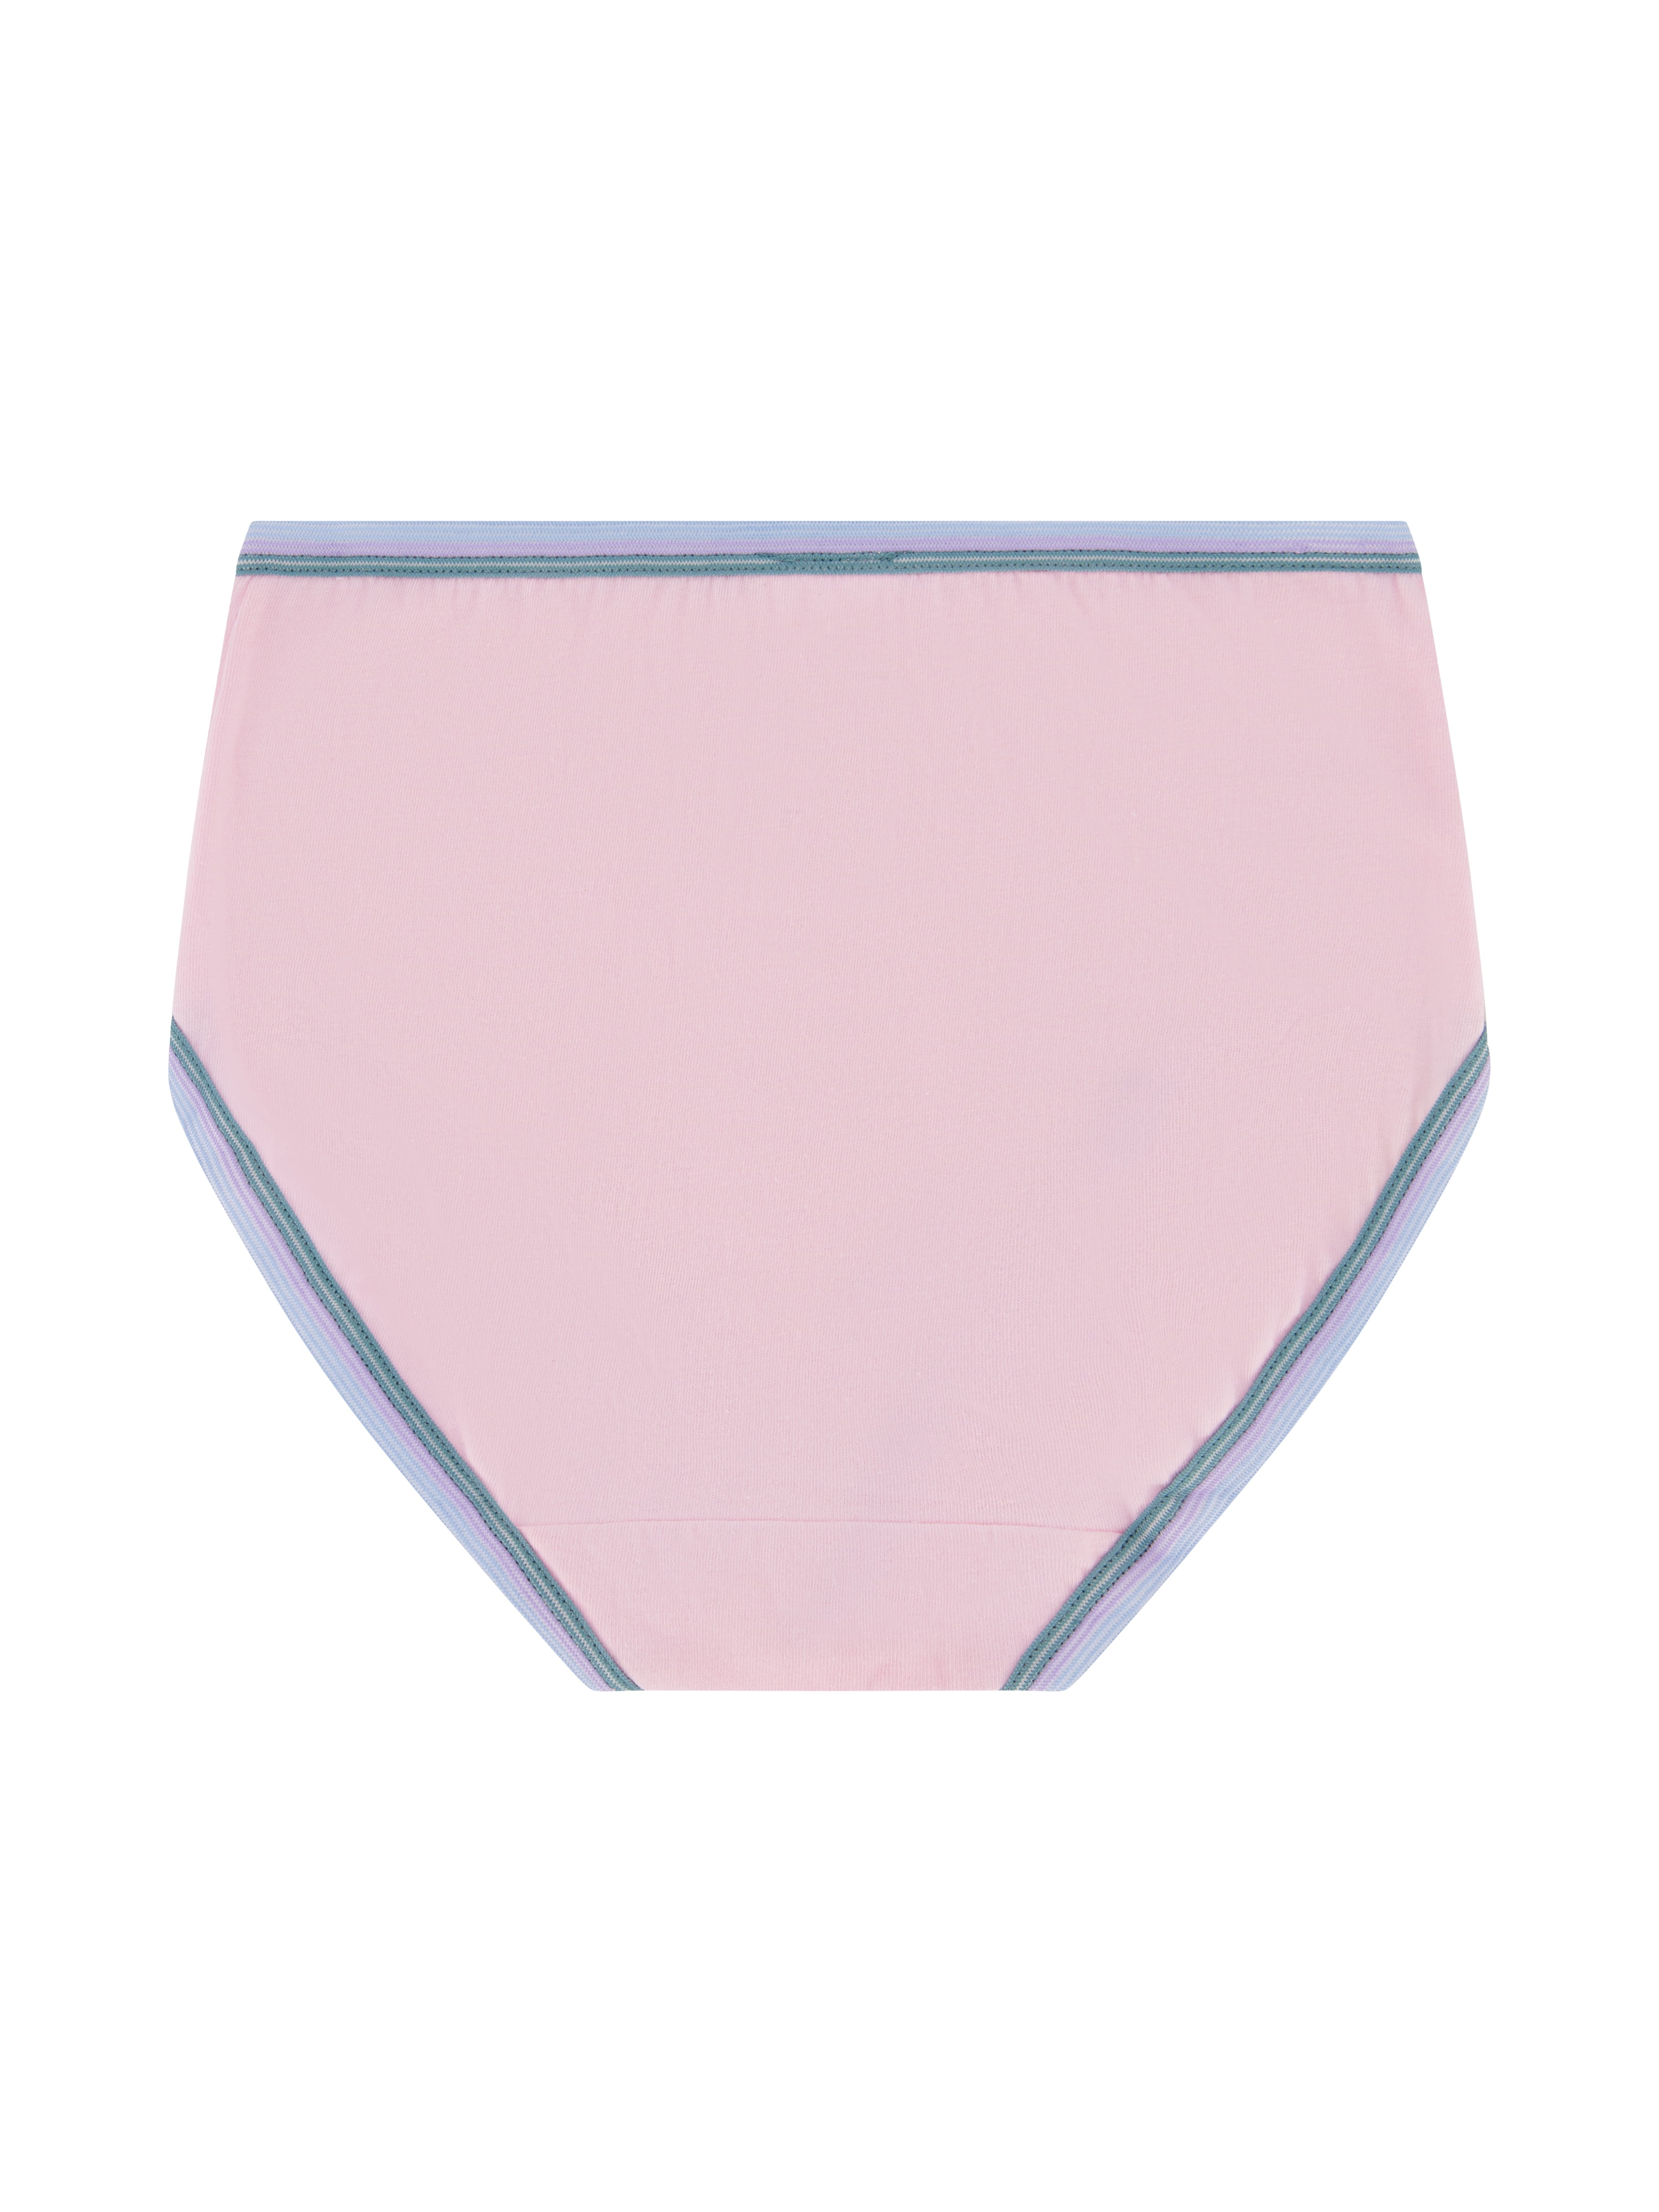 Wonder Nation Girls Brief Underwear, 10-Pack, Sizes 4-18 & Plus 